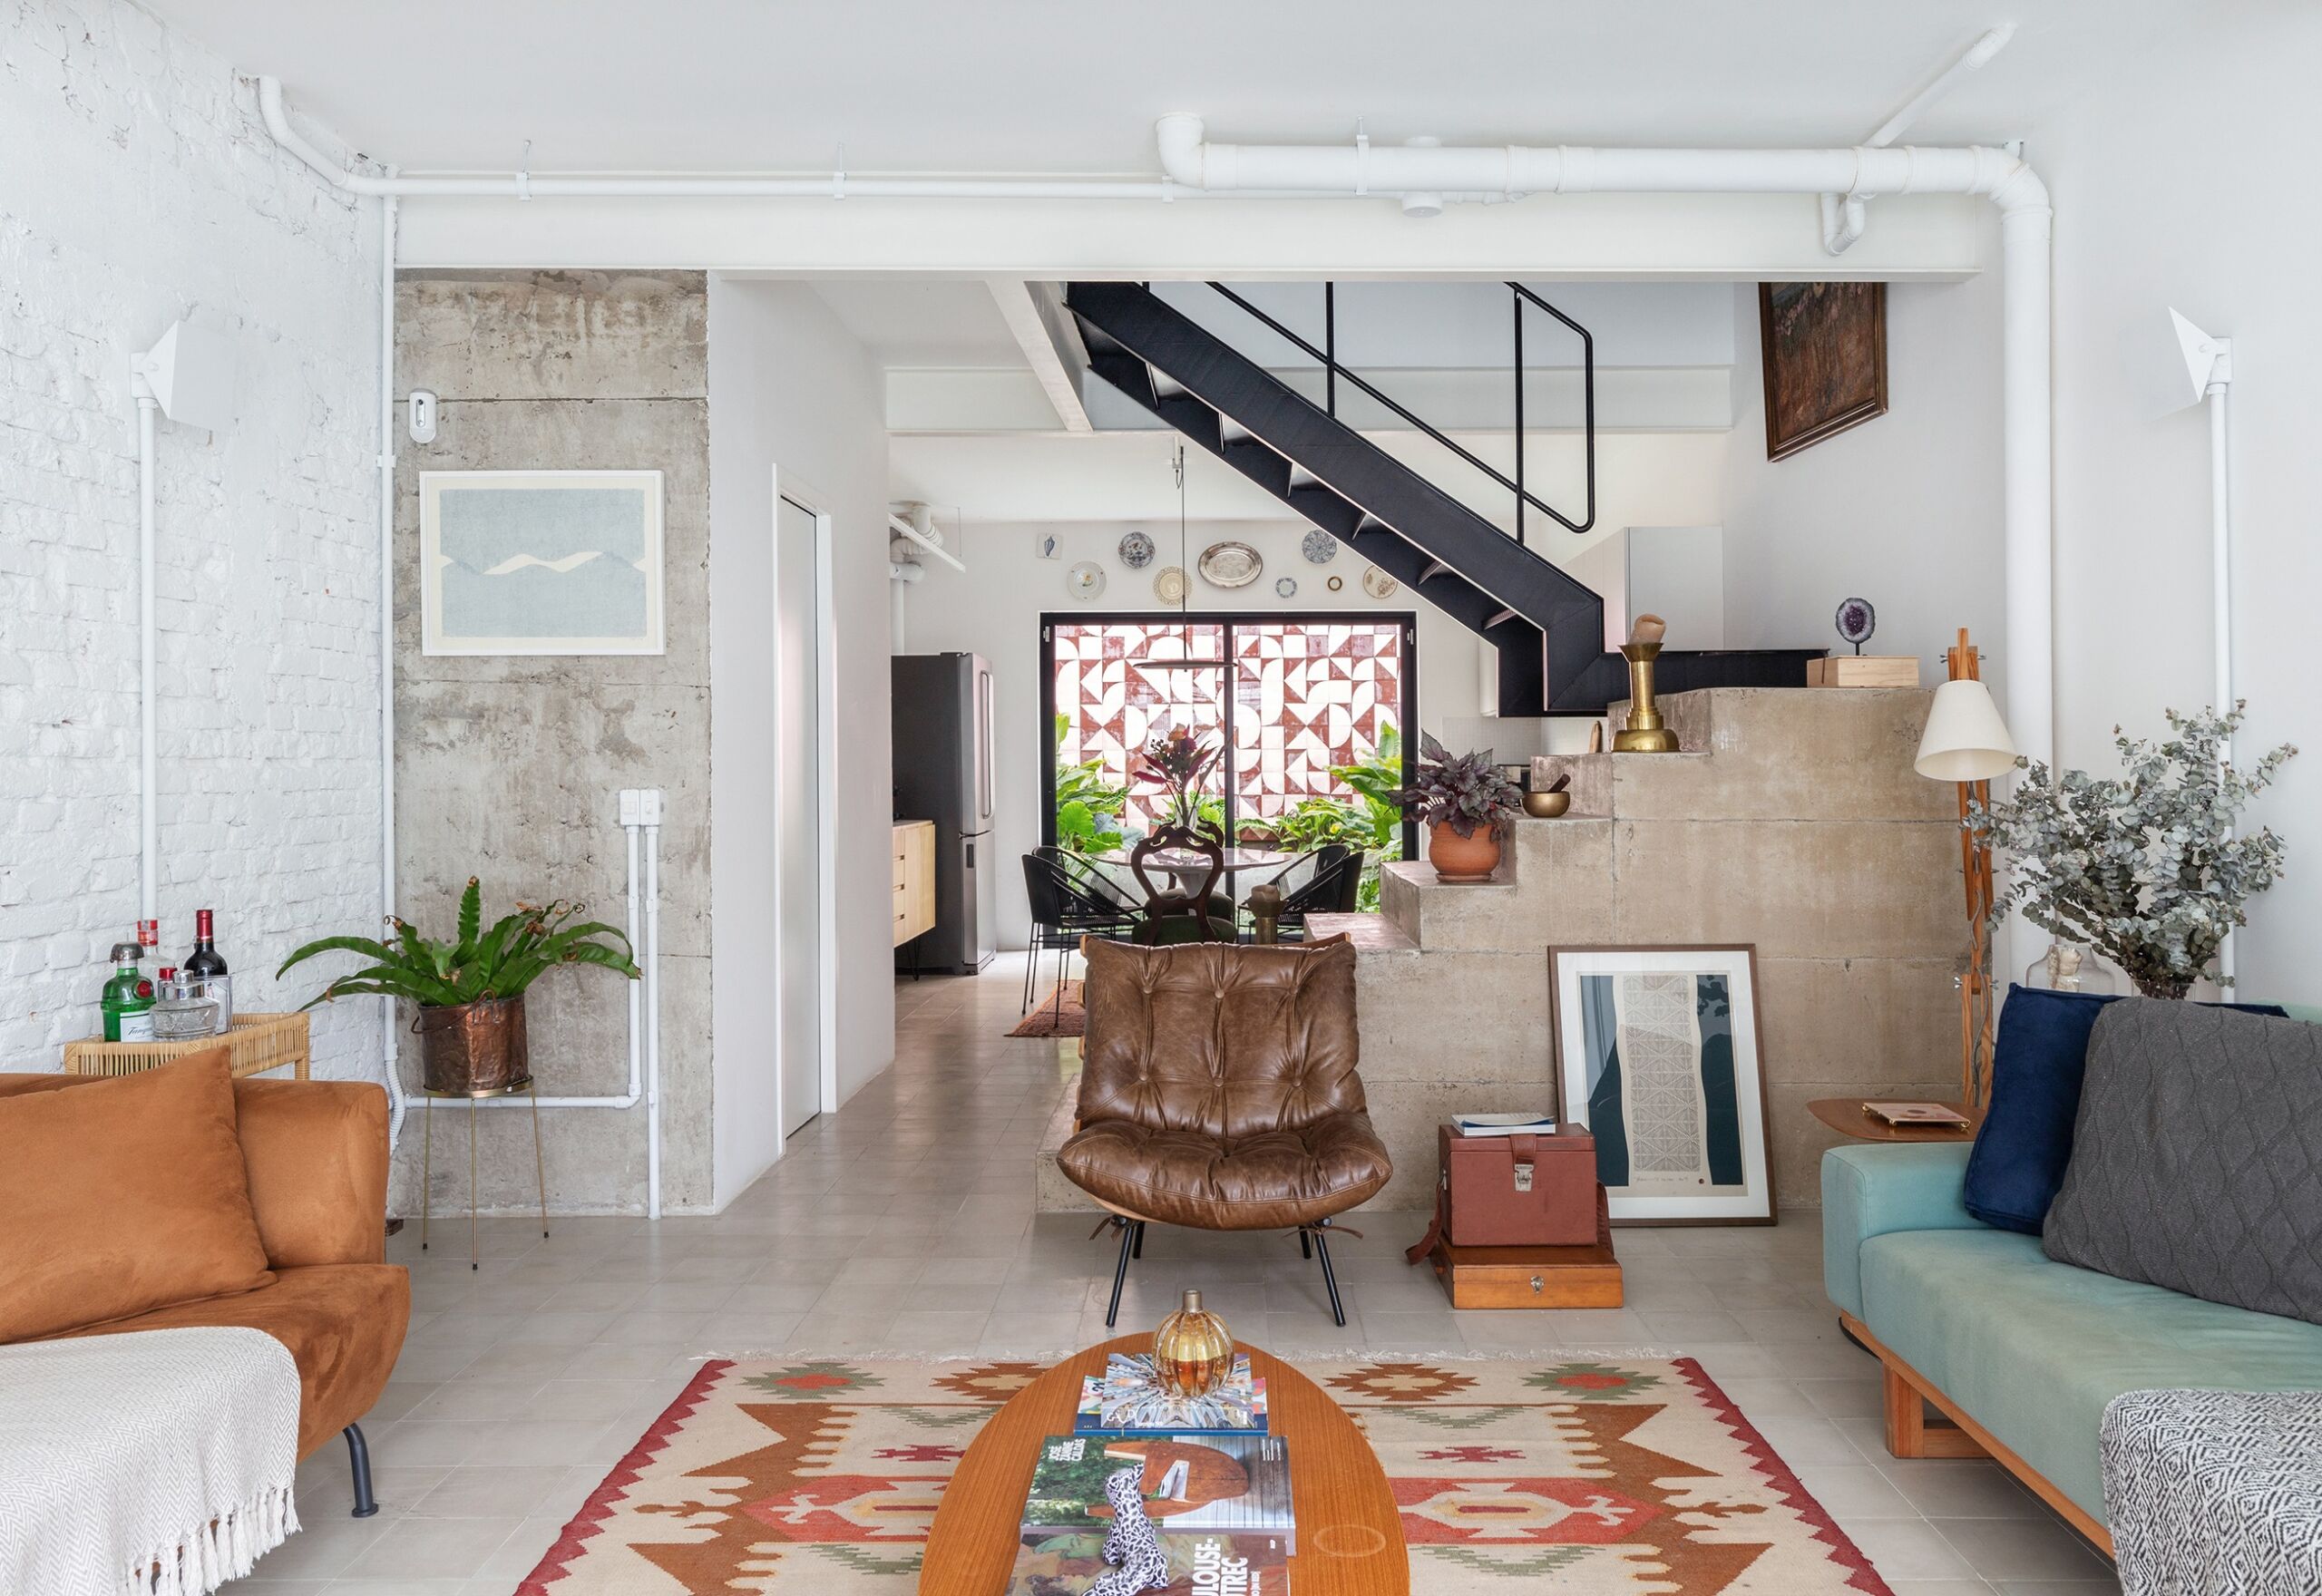 Sala integrada com escada de concreto e sofás coloridos